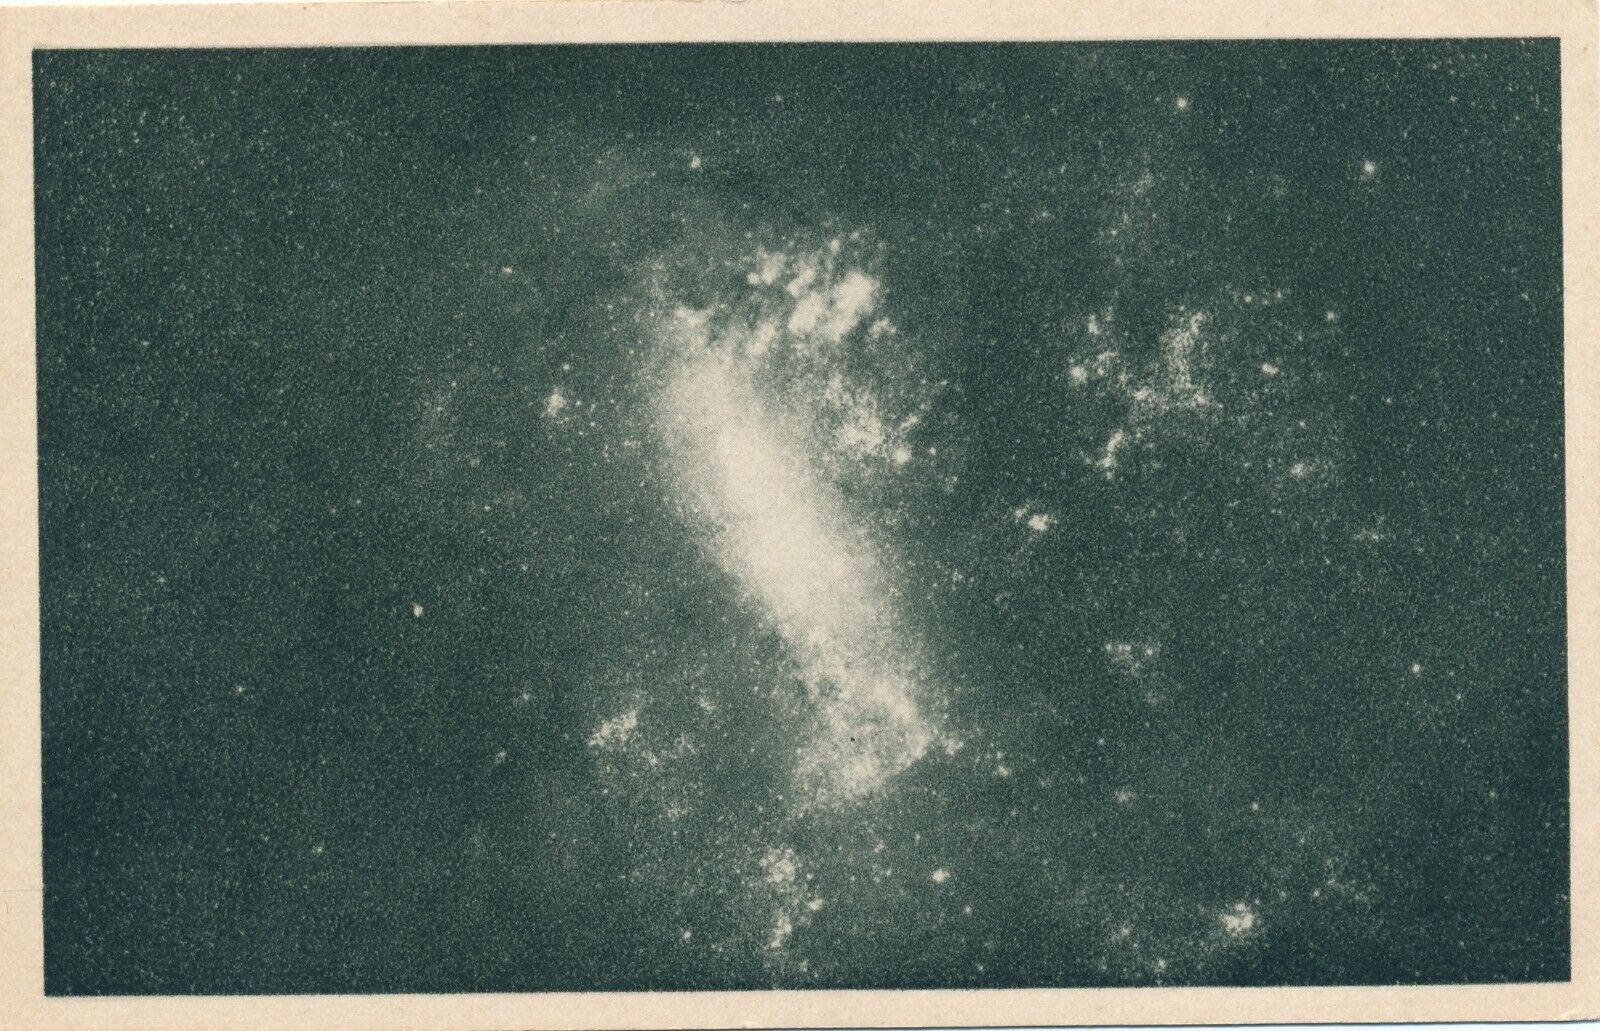 Adler Planetarium in Chicago, IL Magellanic Cloud in Dorado vintage unposted